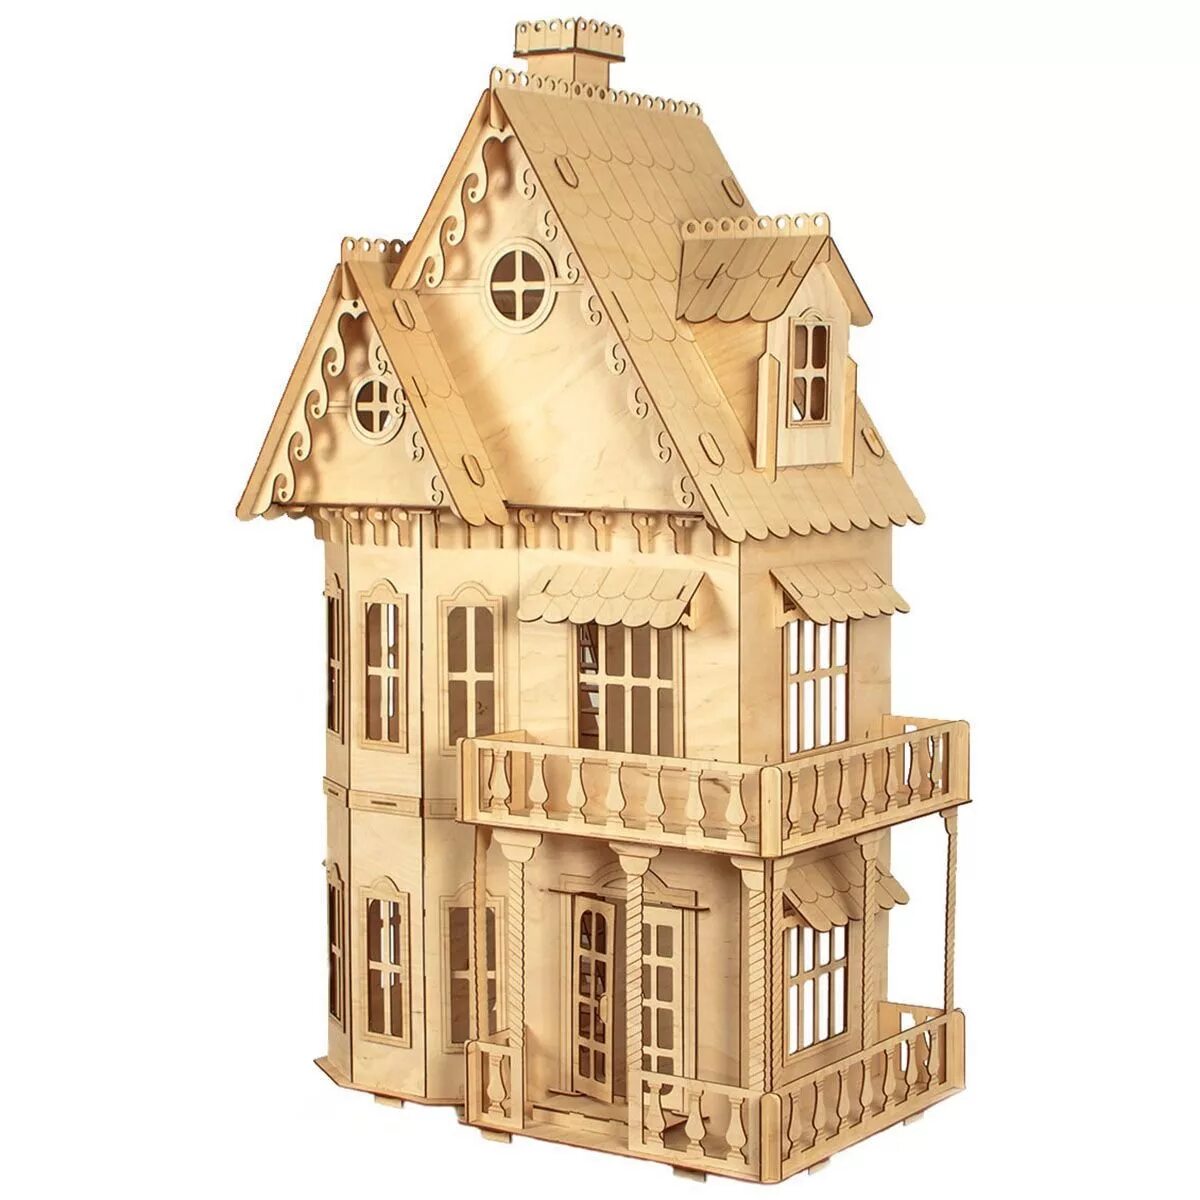 Домик сборный деревянный. Модель домика. Деревянный конструктор дом. Сборная модель домика.